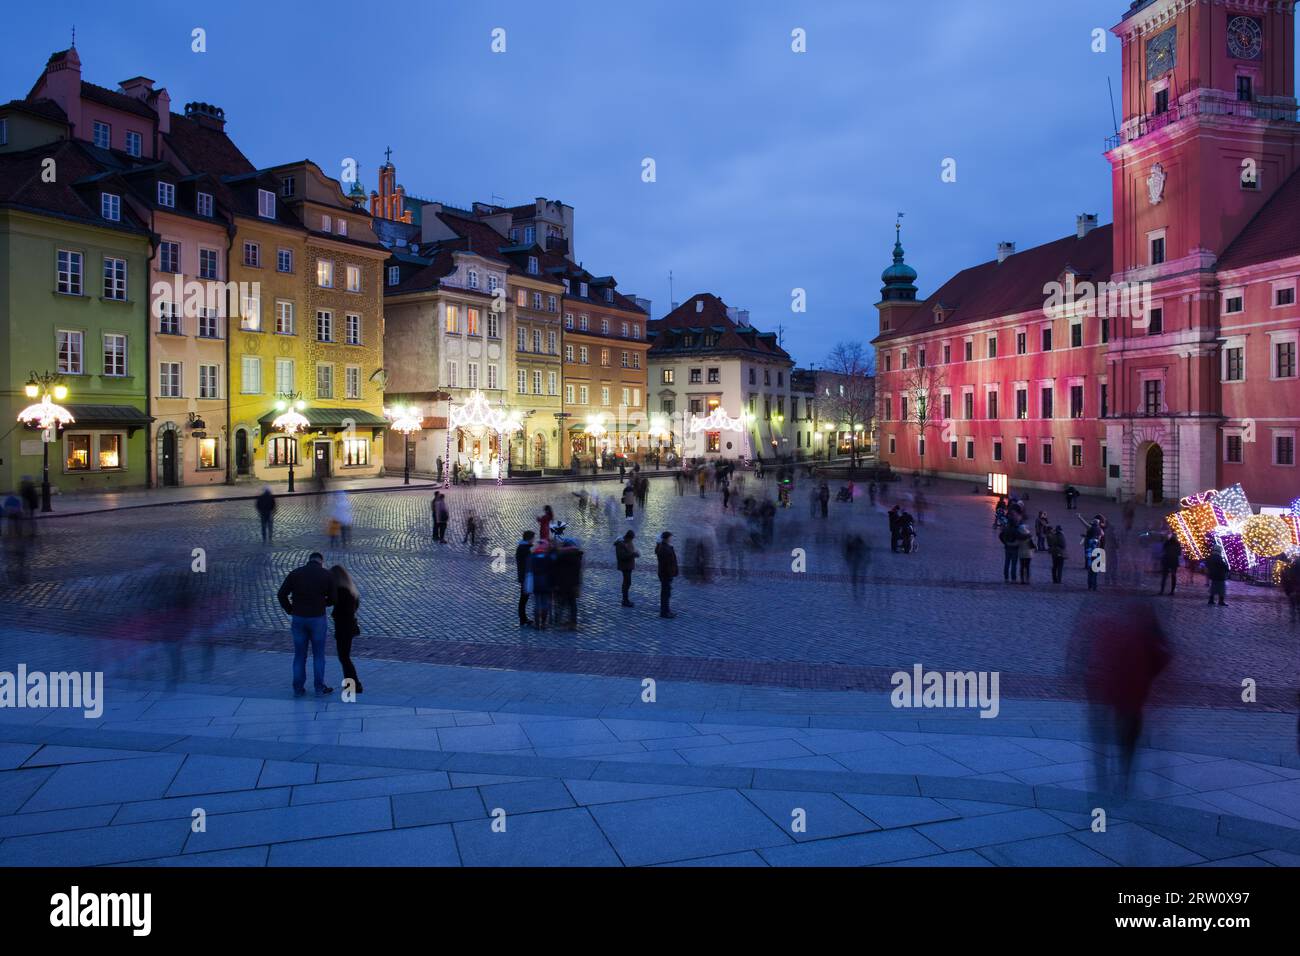 Polen, Warschau, Altstadt, Schlossplatz bei Nacht, historisches Stadtzentrum Stockfoto